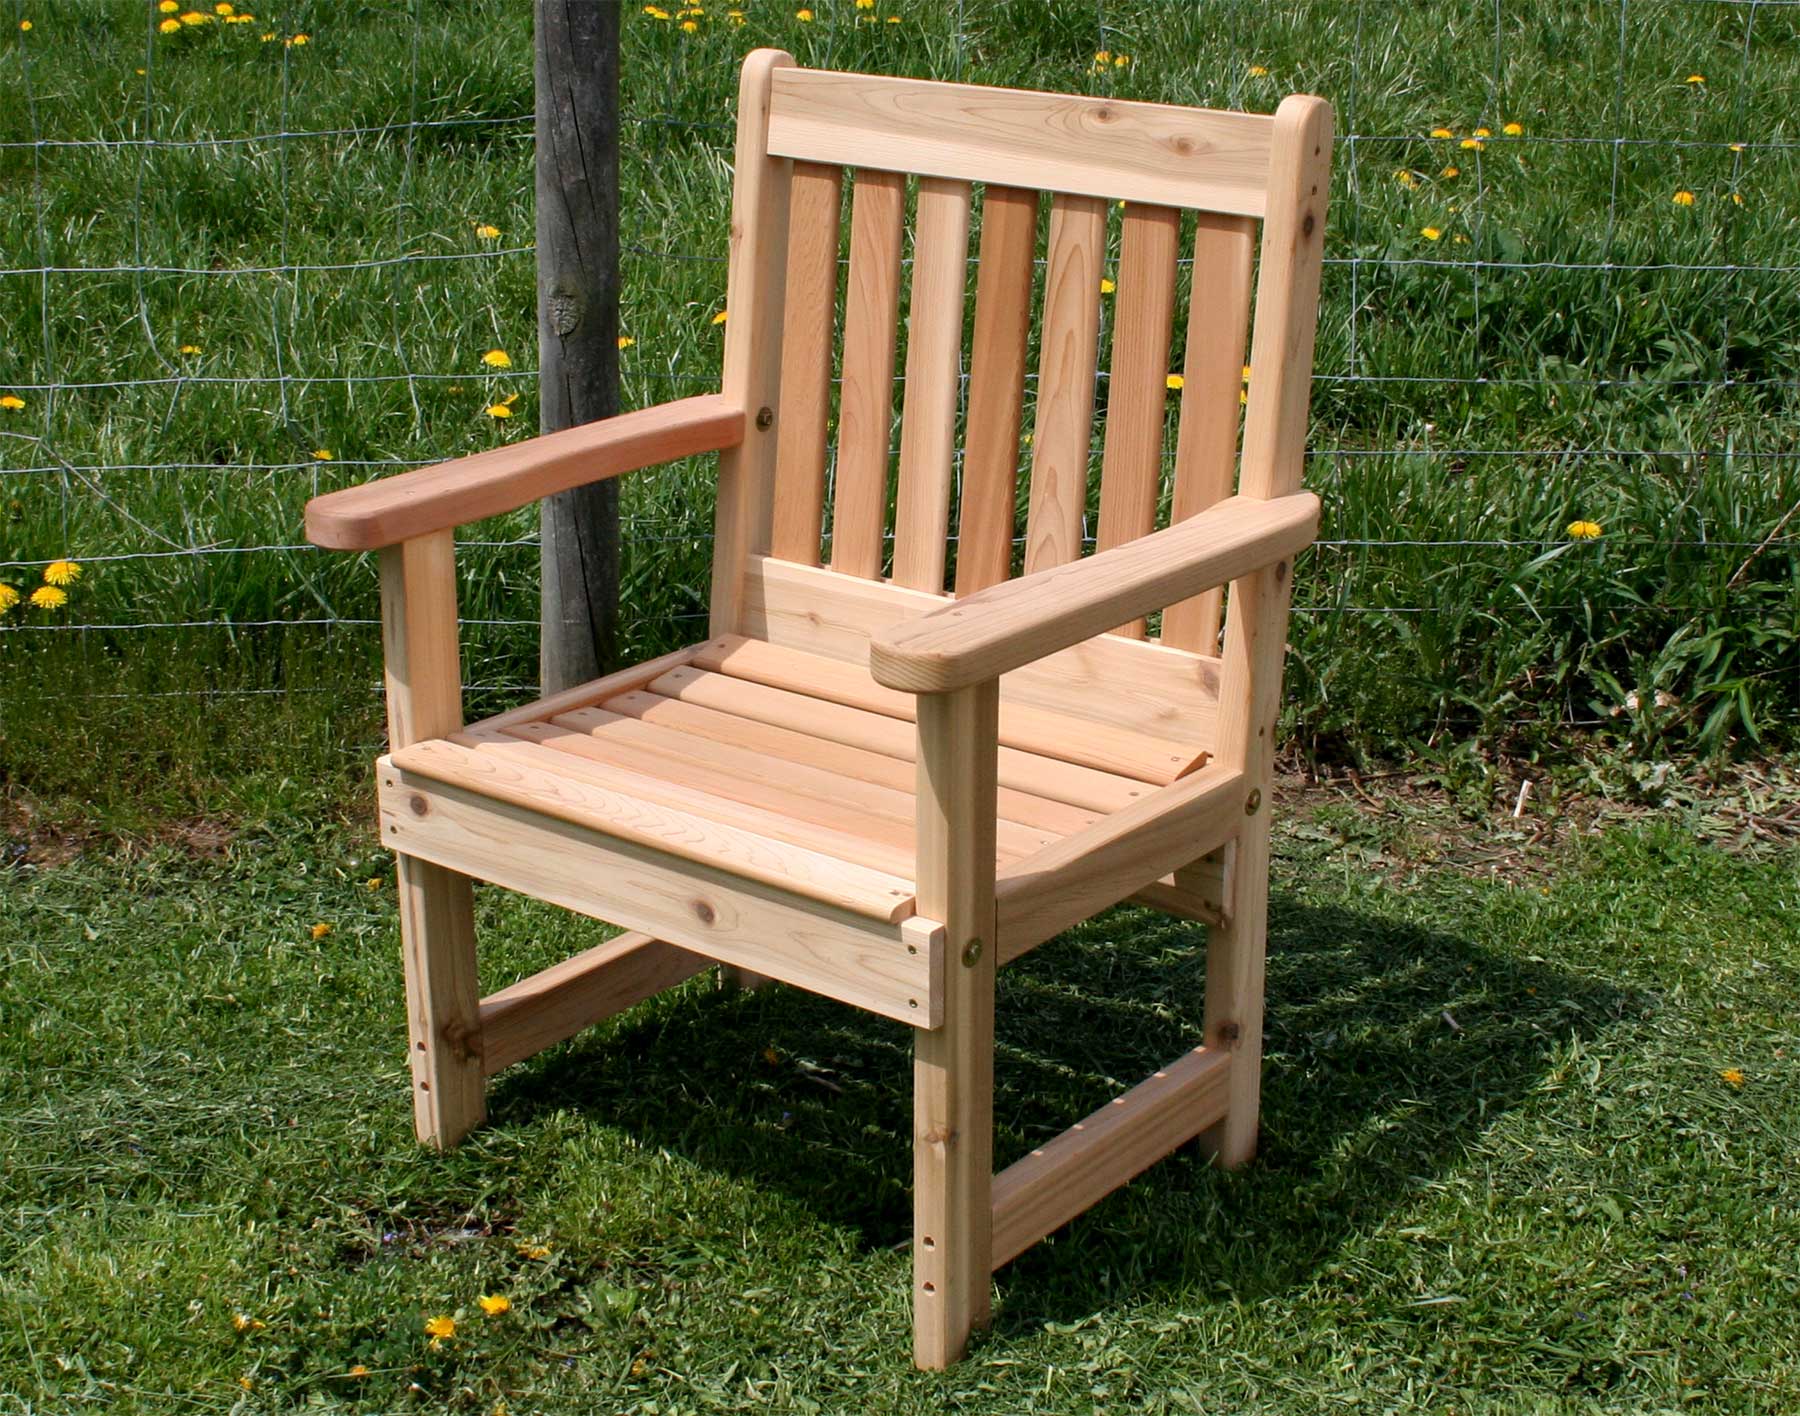 Red Cedar English Garden Patio Chair